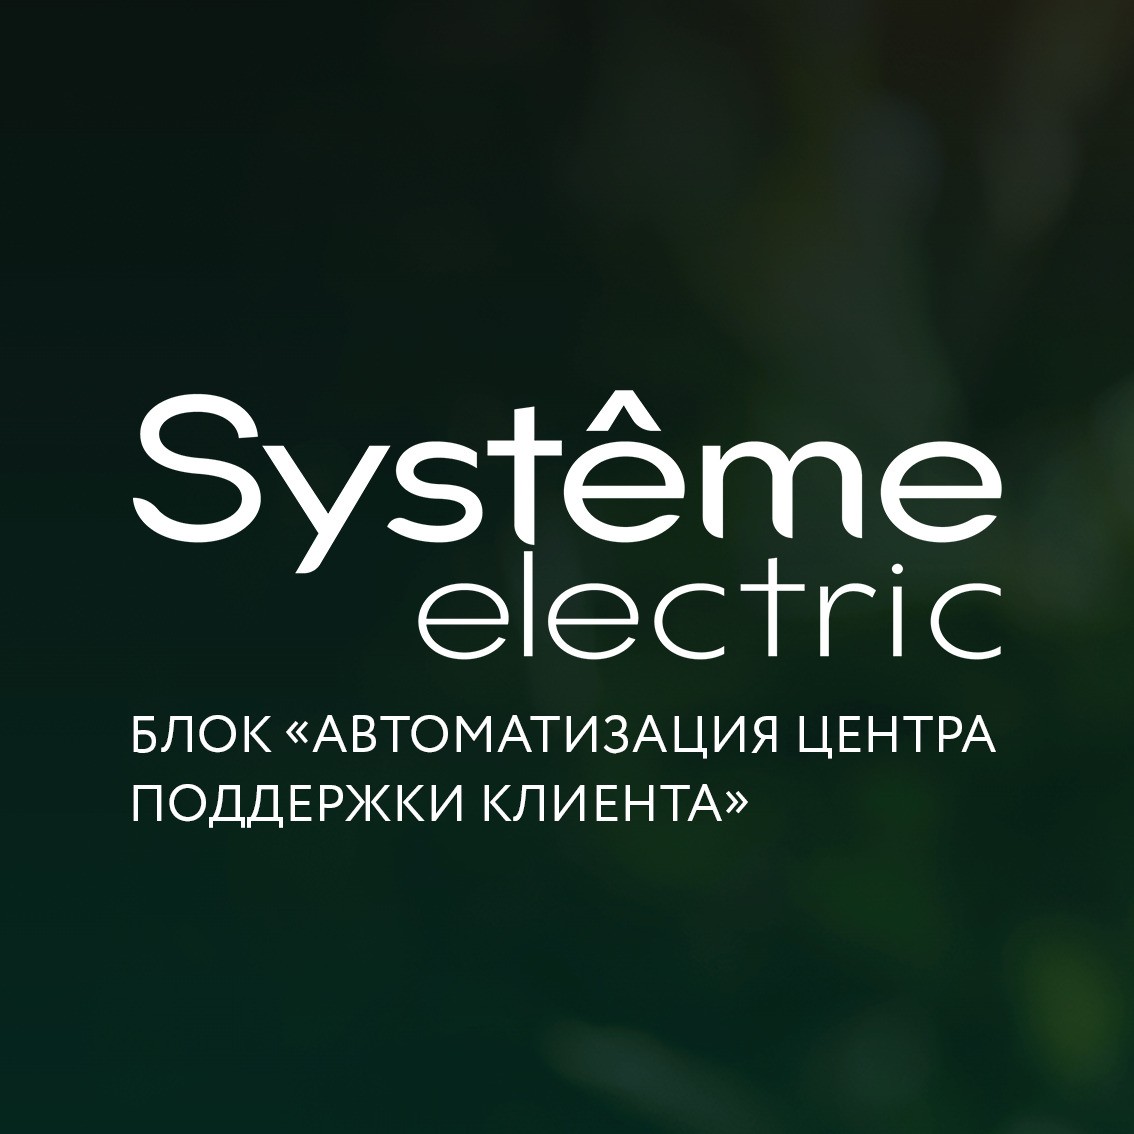 Проектный опыт: реализация блока «Автоматизация центра поддержки клиента» на Битрикс24 для Systeme Electric